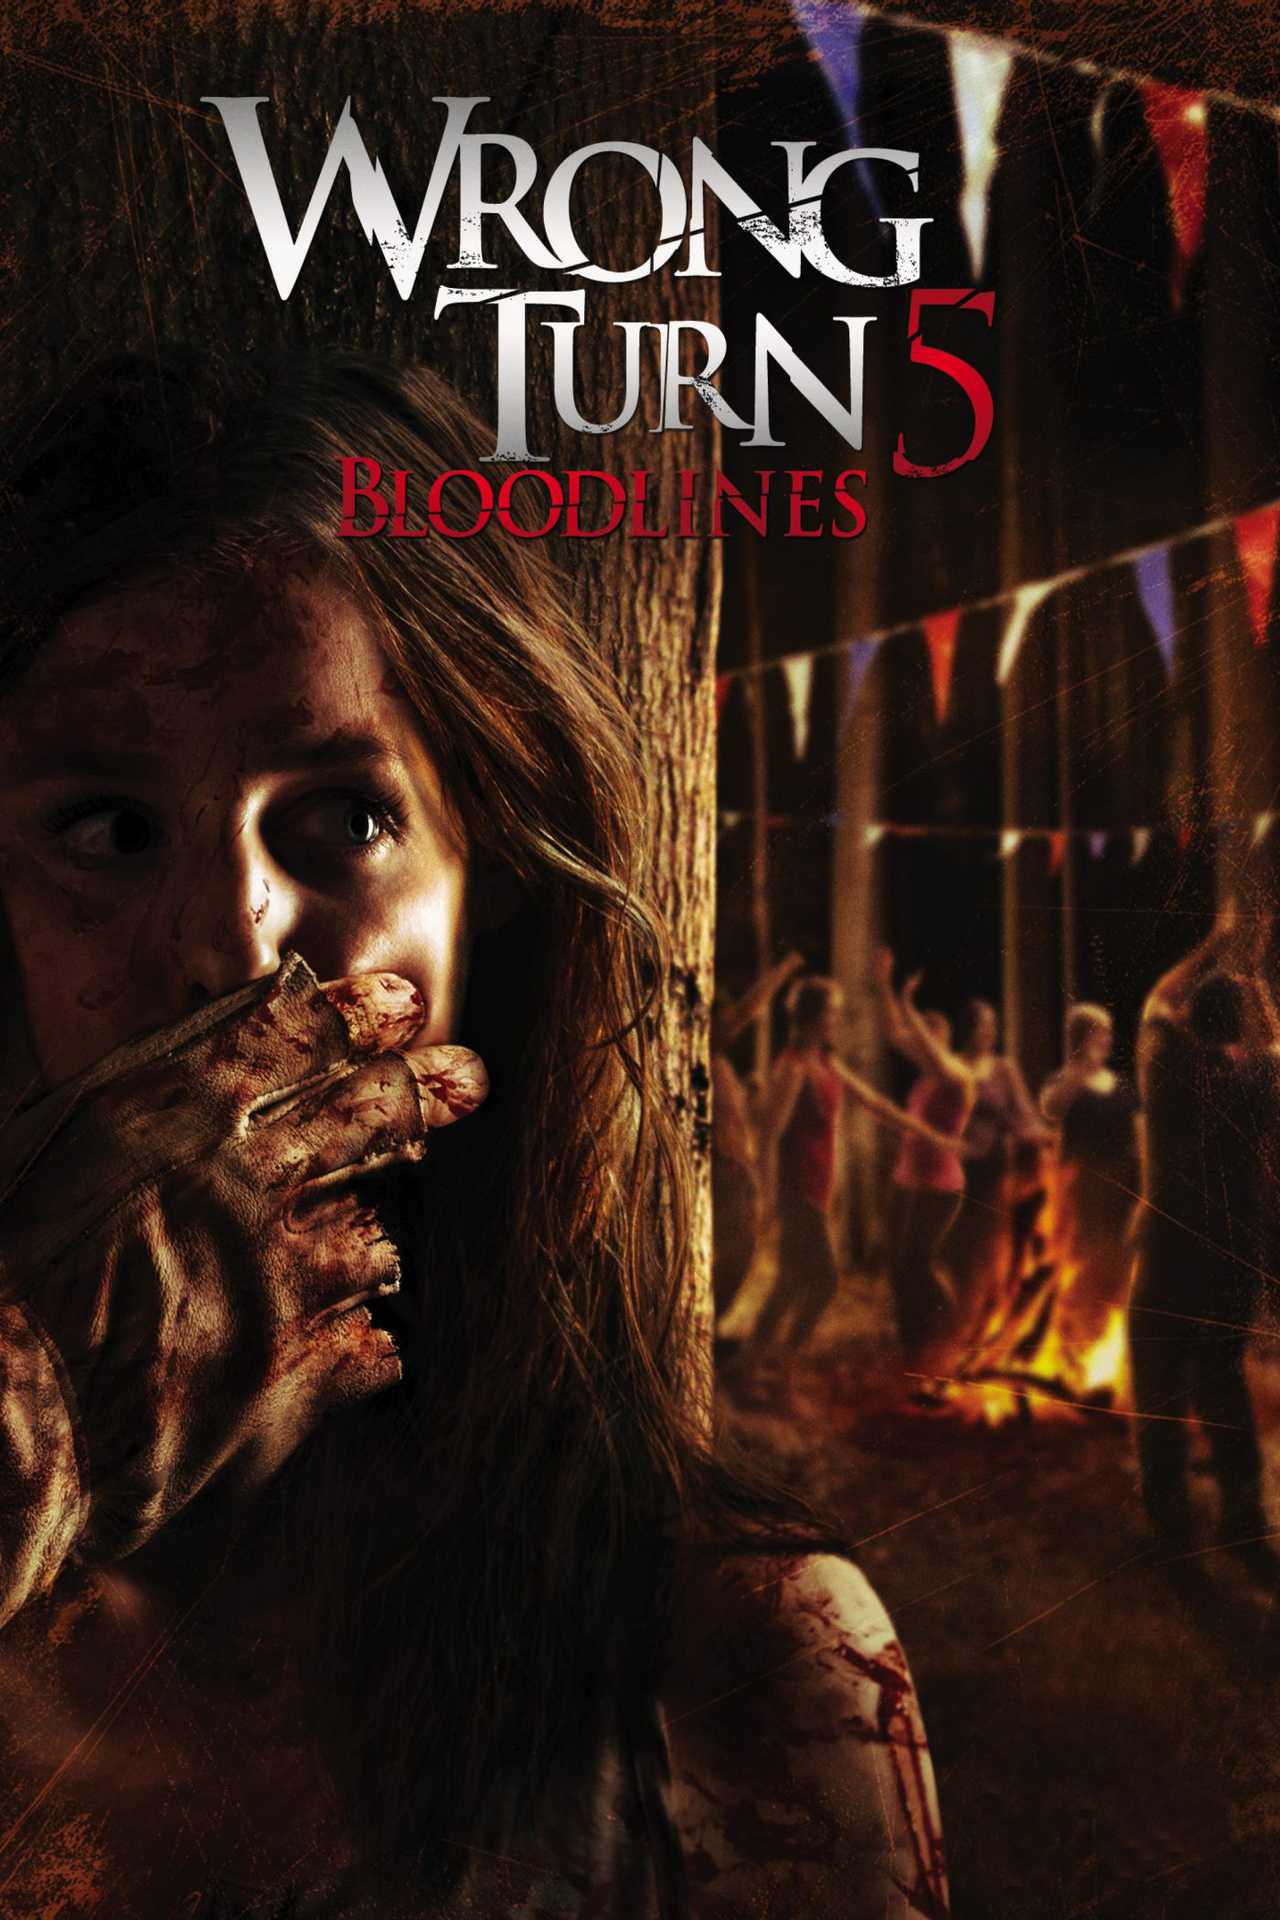 مشاهدة فيلم Wrong Turn 5 Bloodlines 2012 مترجم ماي سيما